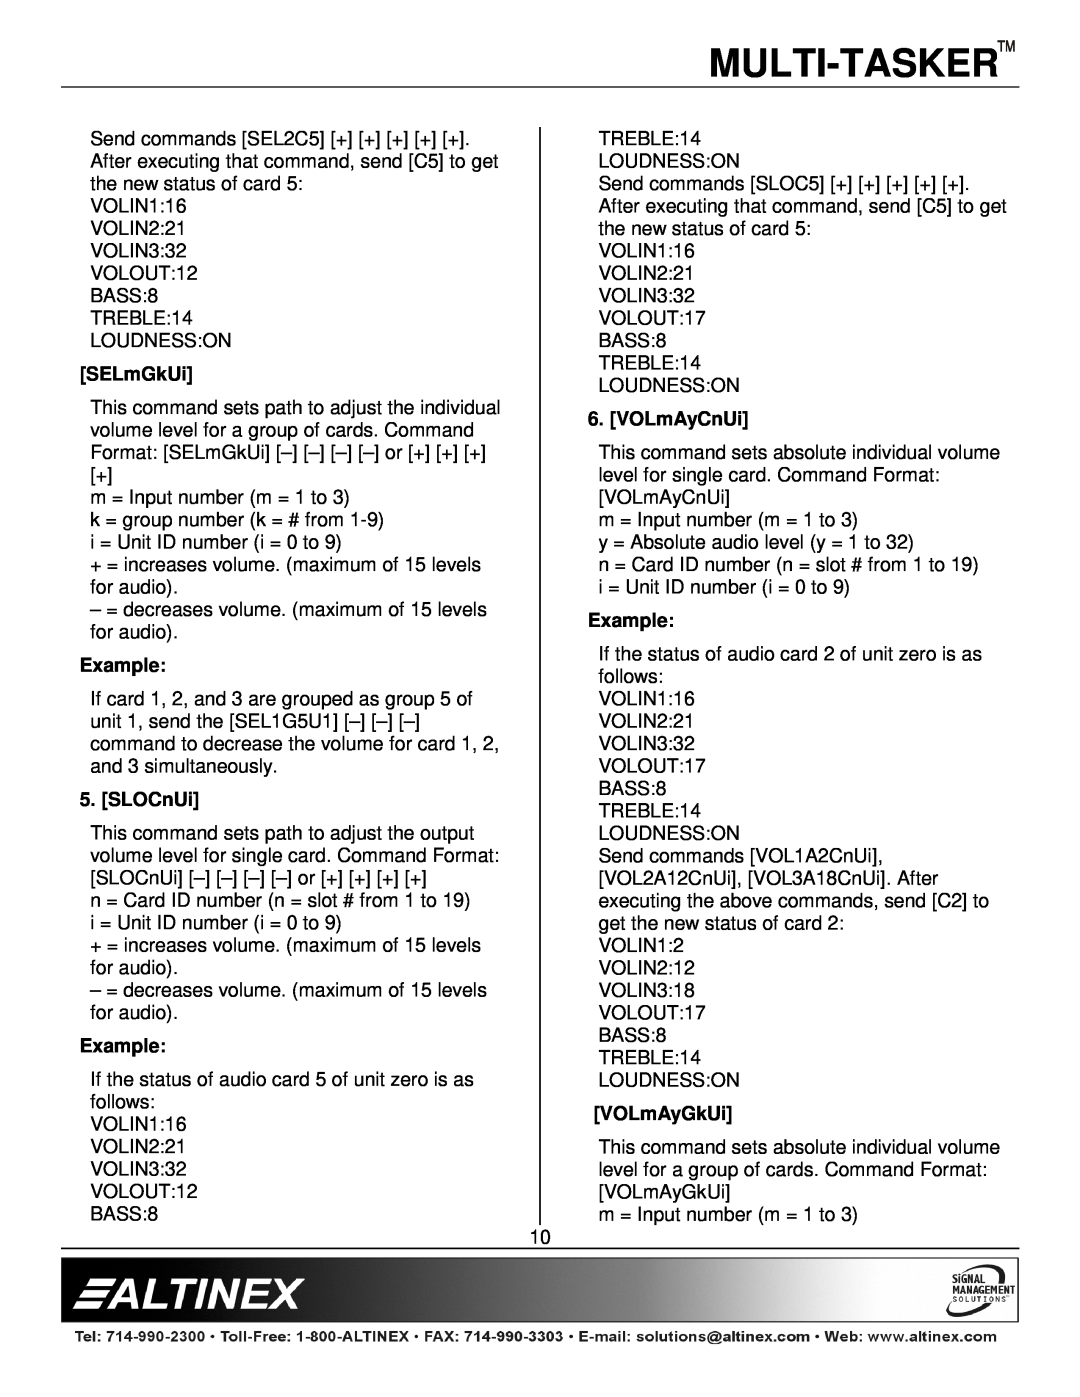 Altinex MT113-102/103 manual Multi-Tasker, SELmGkUi, SLOCnUi, VOLmAyCnUi, VOLmAyGkUi 